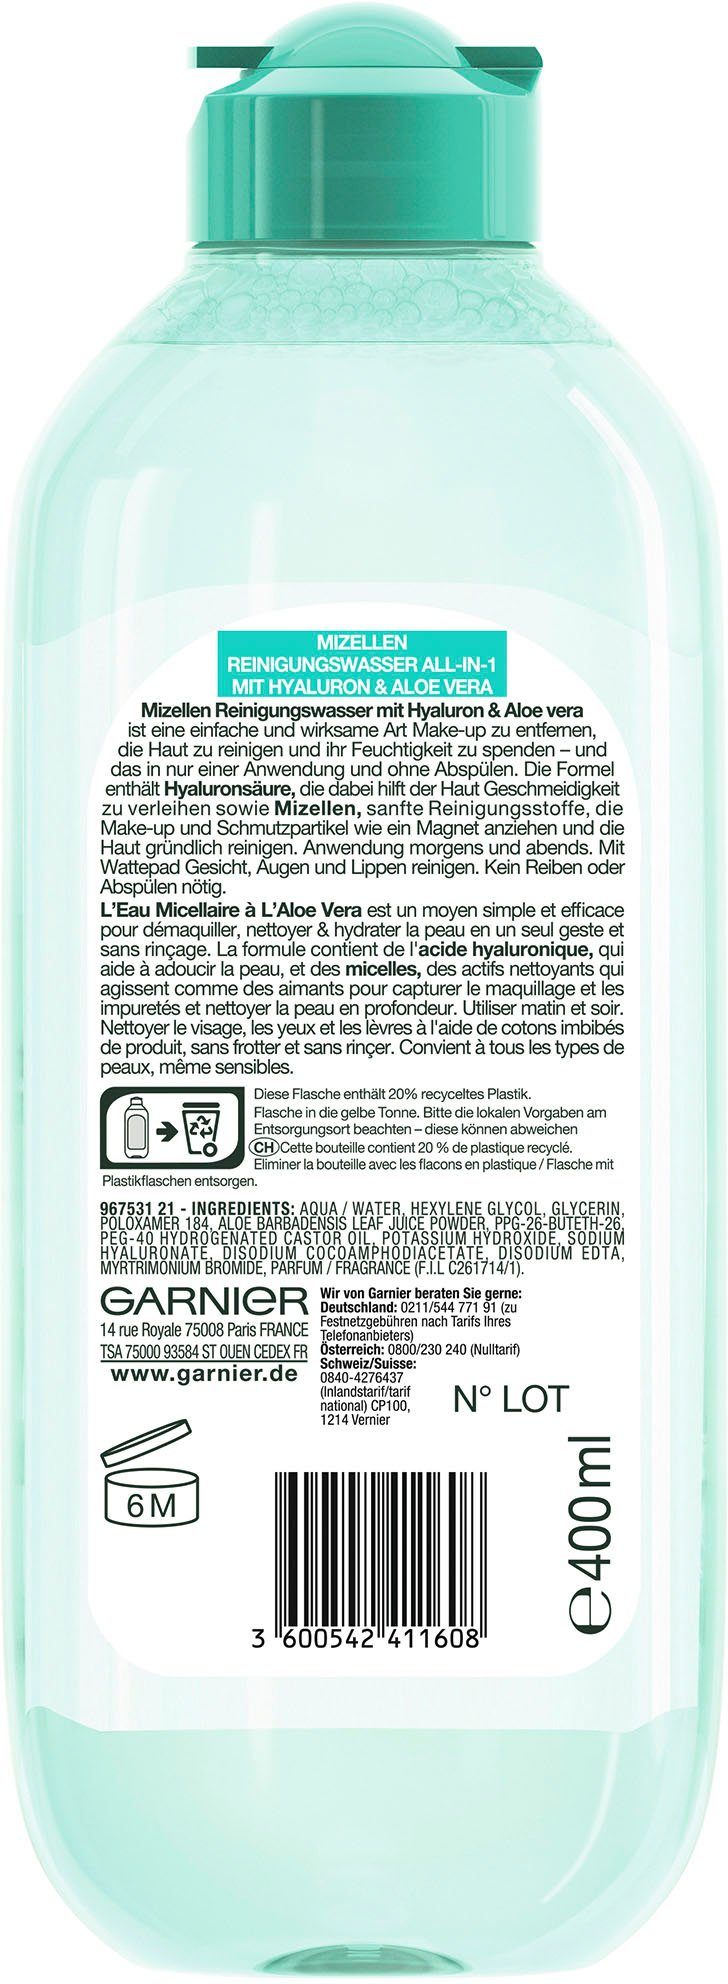 GARNIER Gesichtswasser All-in-1 Reinigungswasser Mizellen